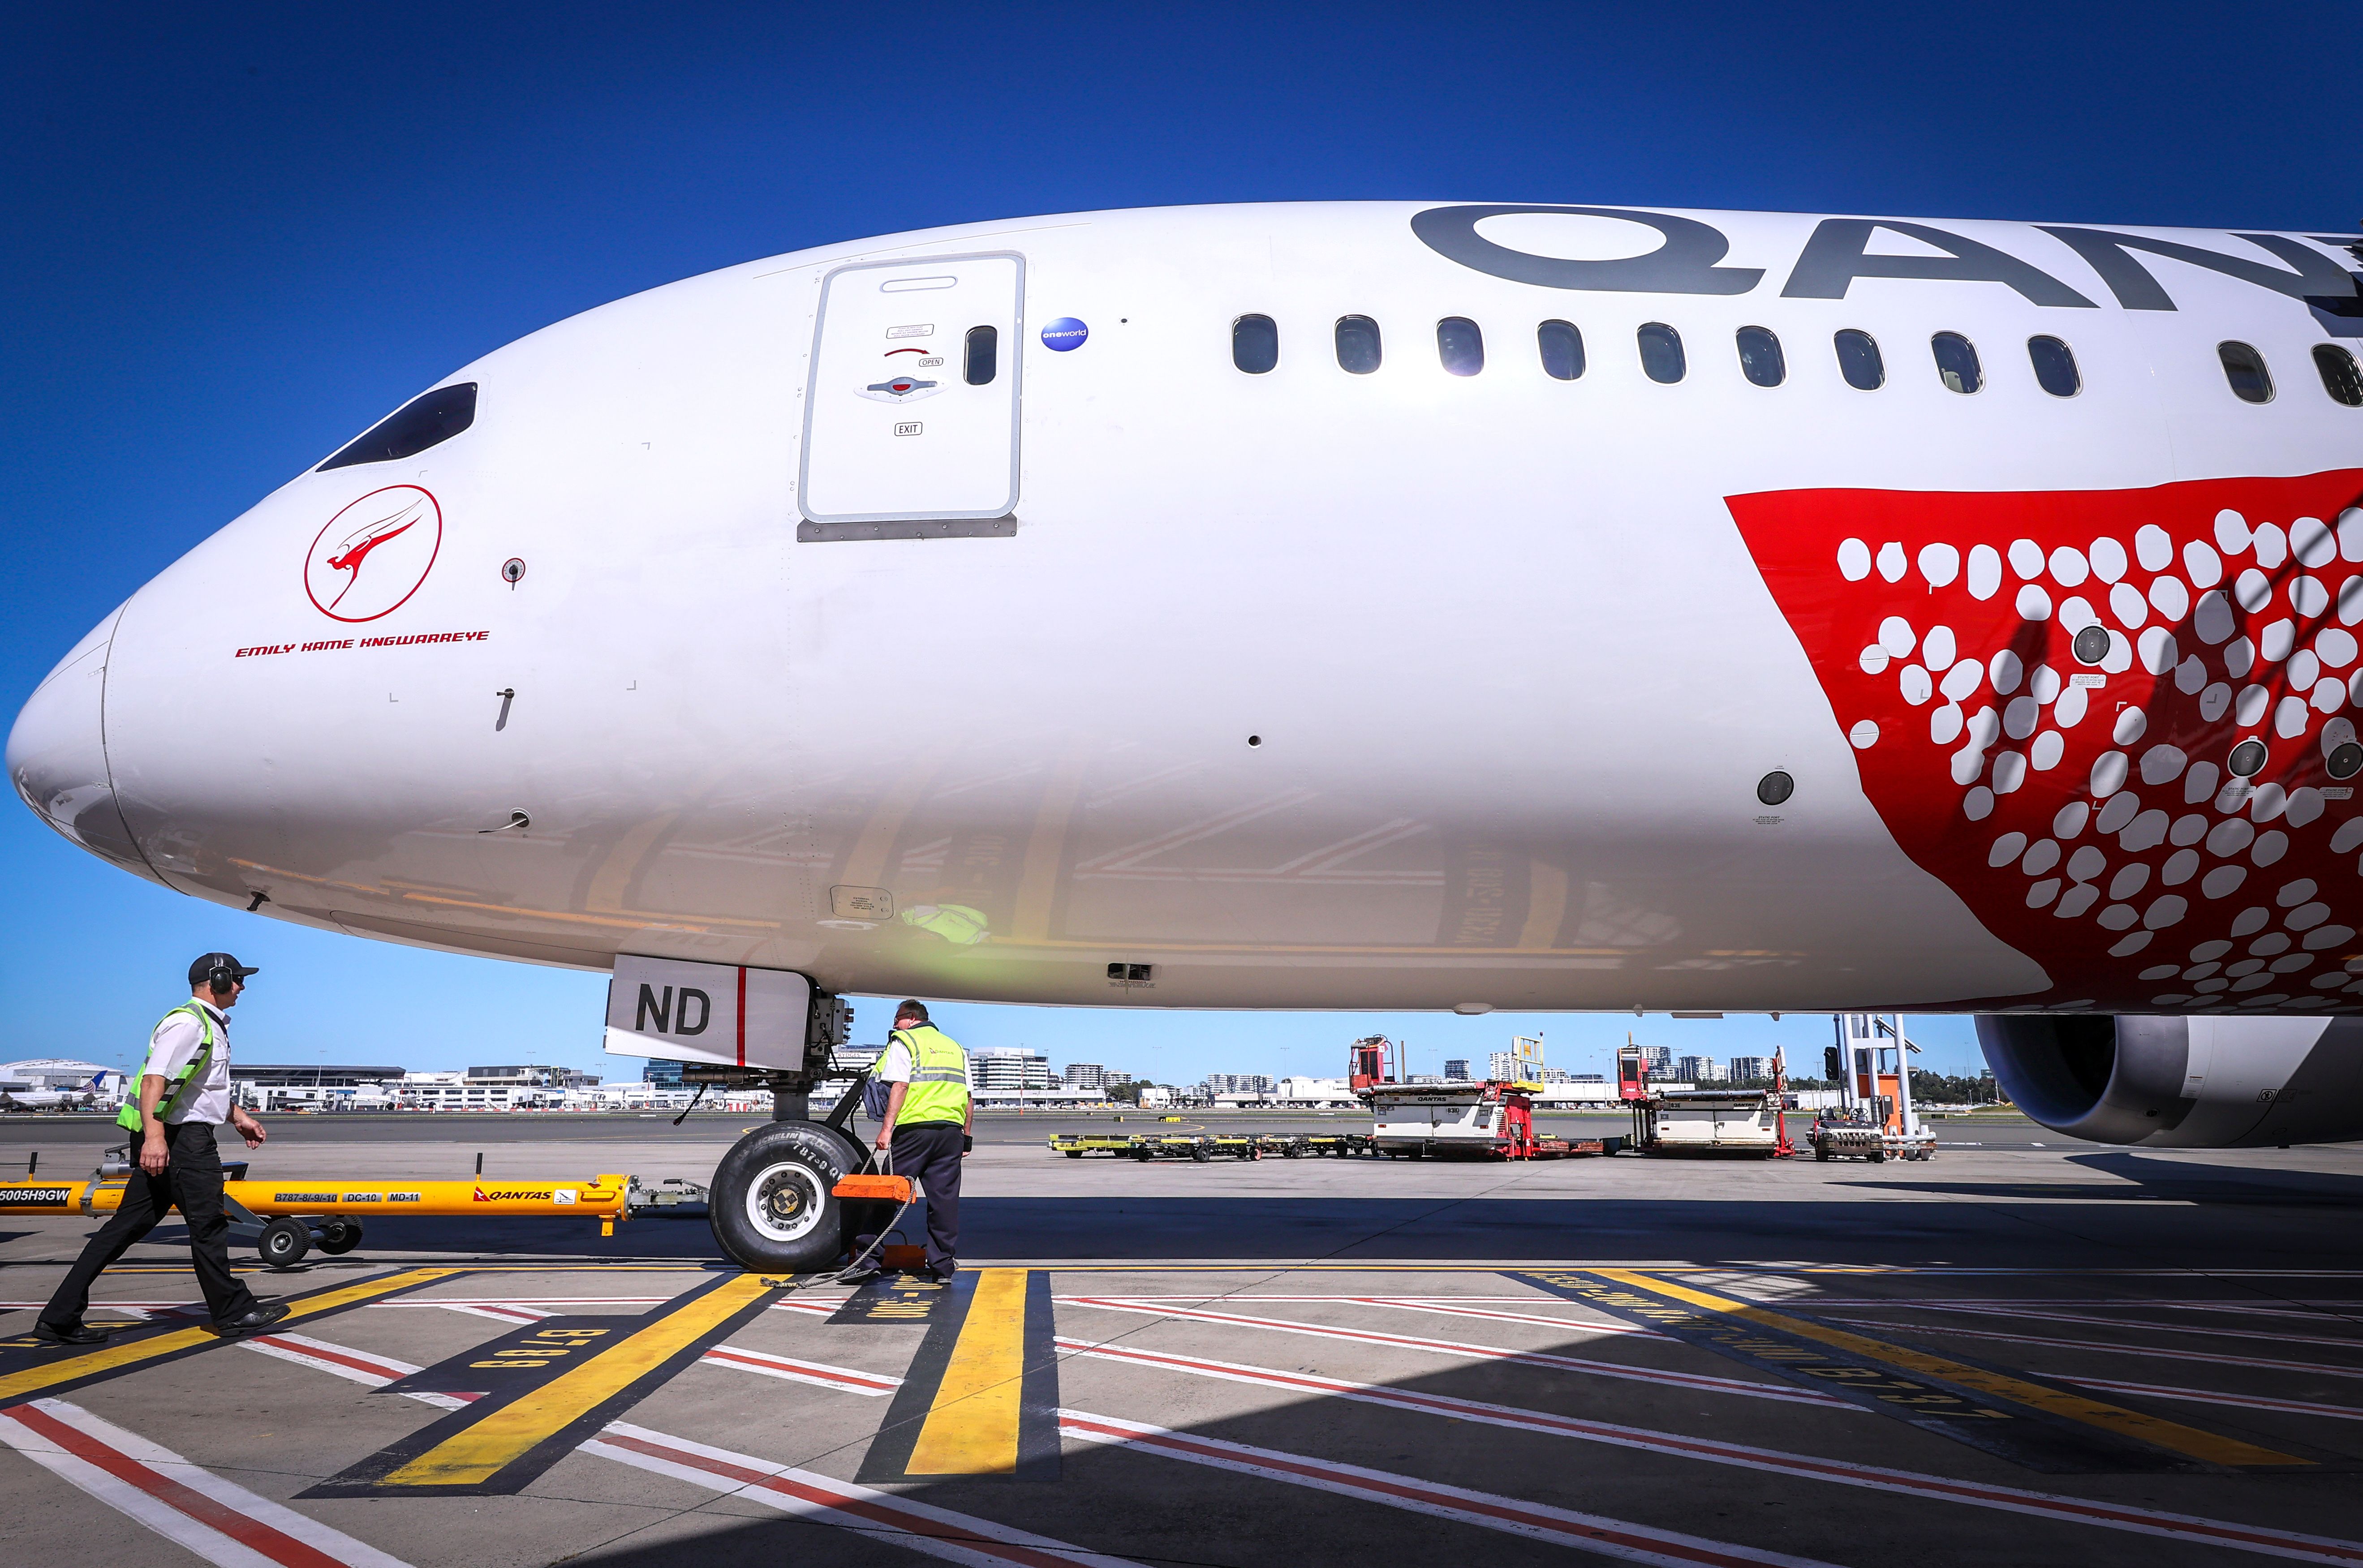 Qantas will connect Melbourne to Dallas